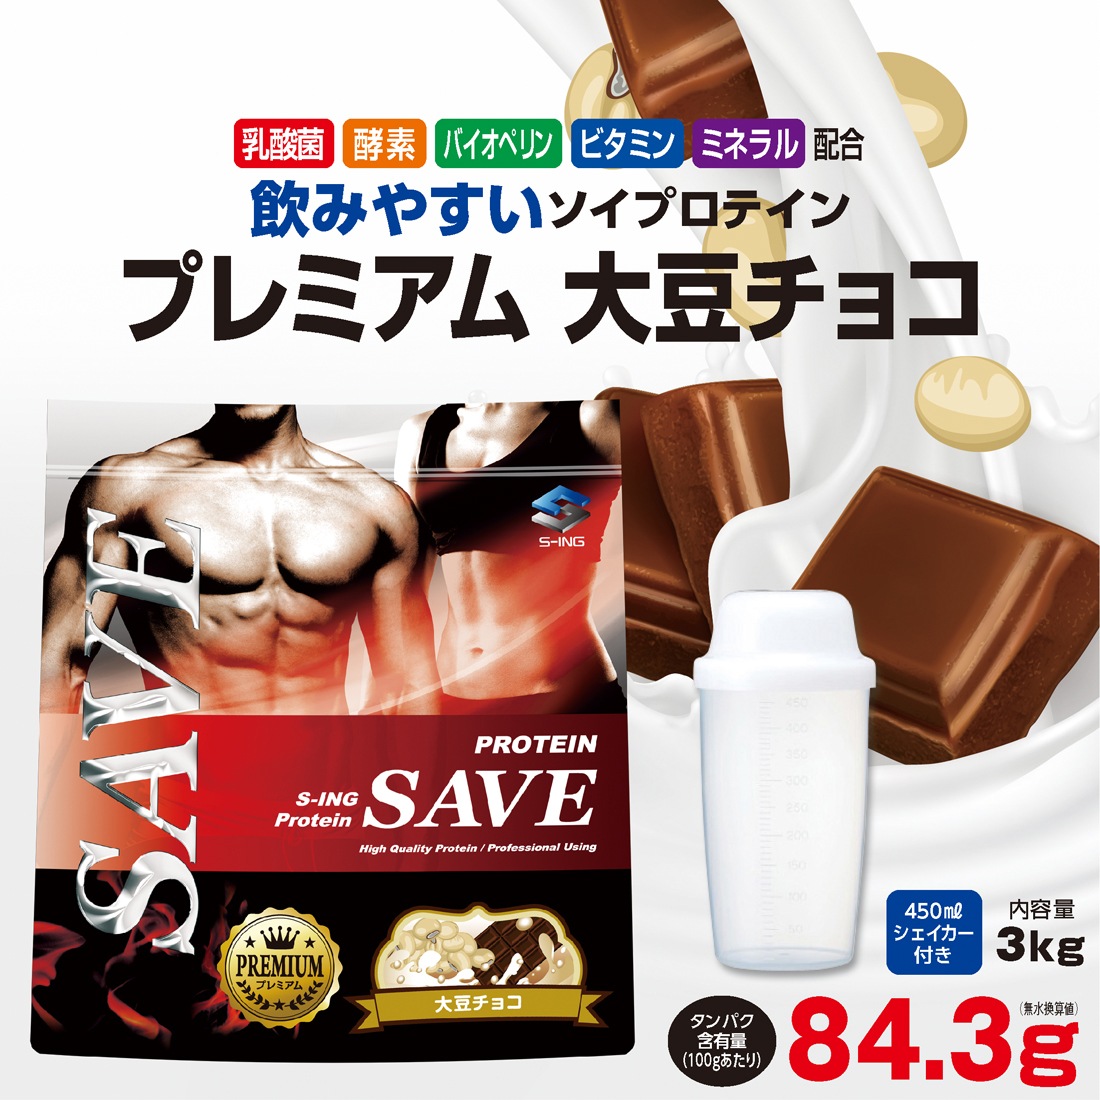 【お気にいる】 SAVE 3kg プロテイン 【シェイカー付】 プレミアム ソイプロテイン 大豆チョコ プロテイン配合